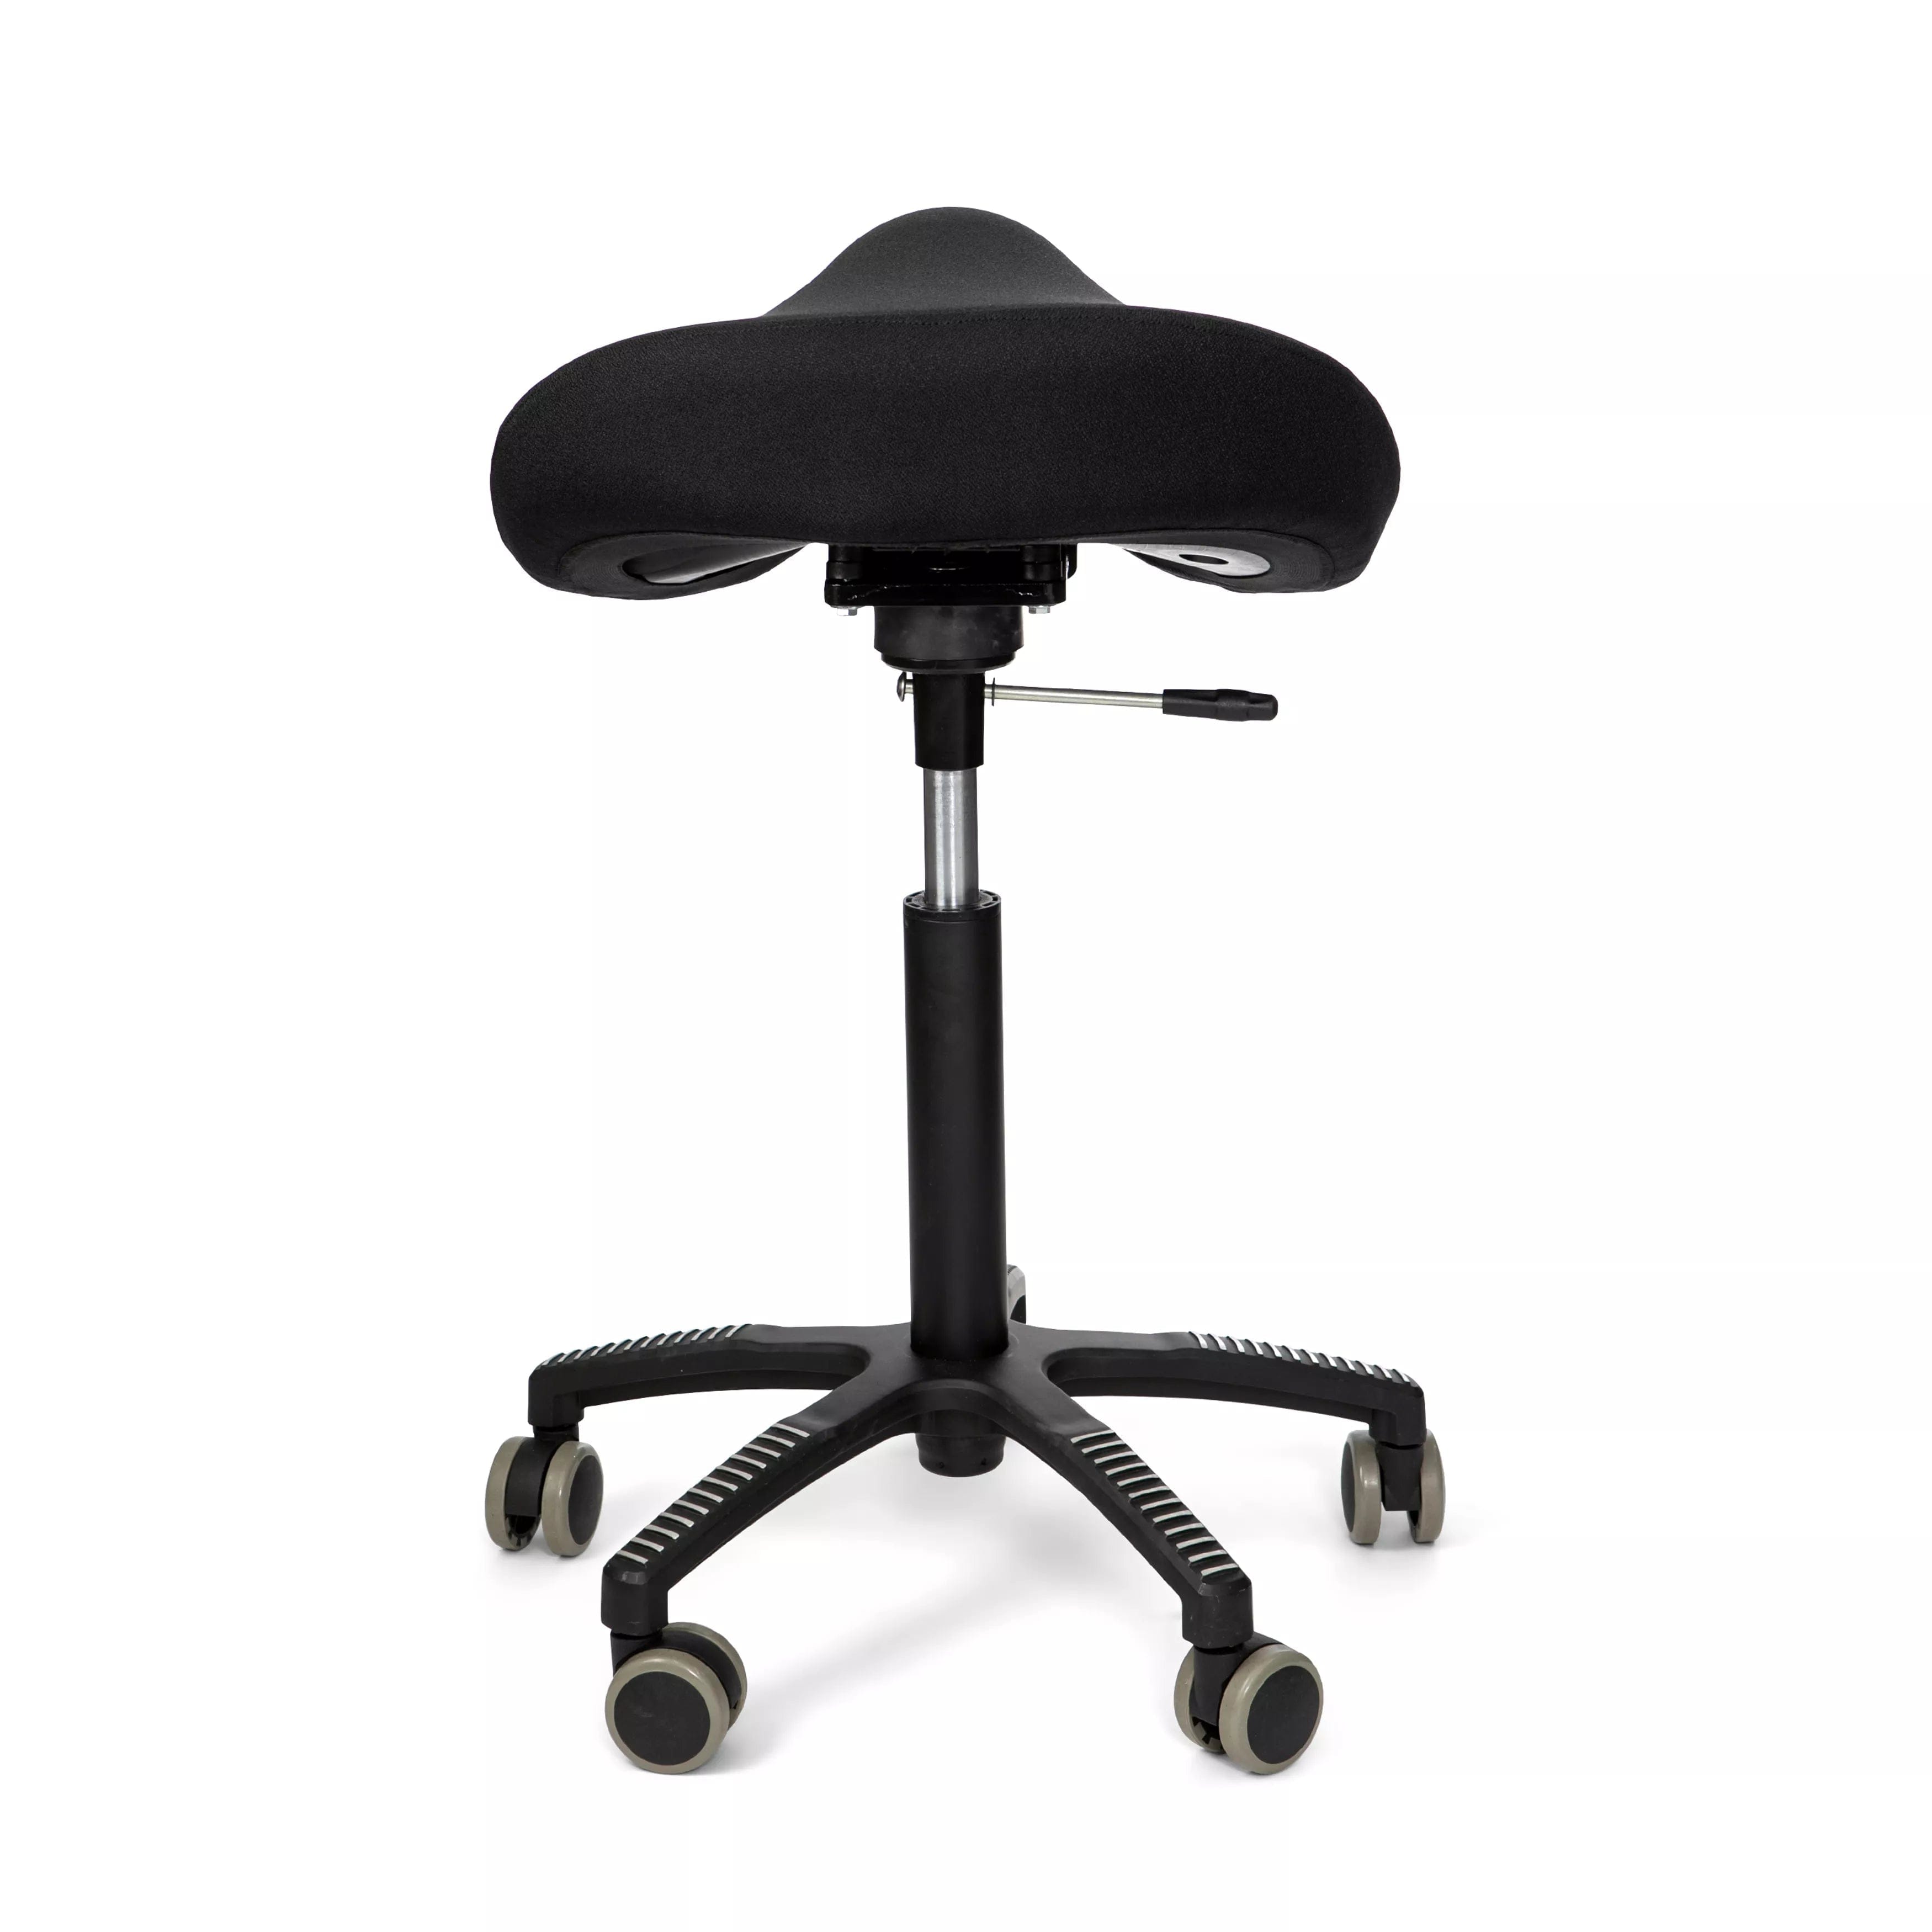  Soft Swing sadelstol - Aktiva stolar och sitsar, koncentrationssvårigheter, ryggbesvär, Sadelstolar, Stolar, trötthet - ErgoFinland